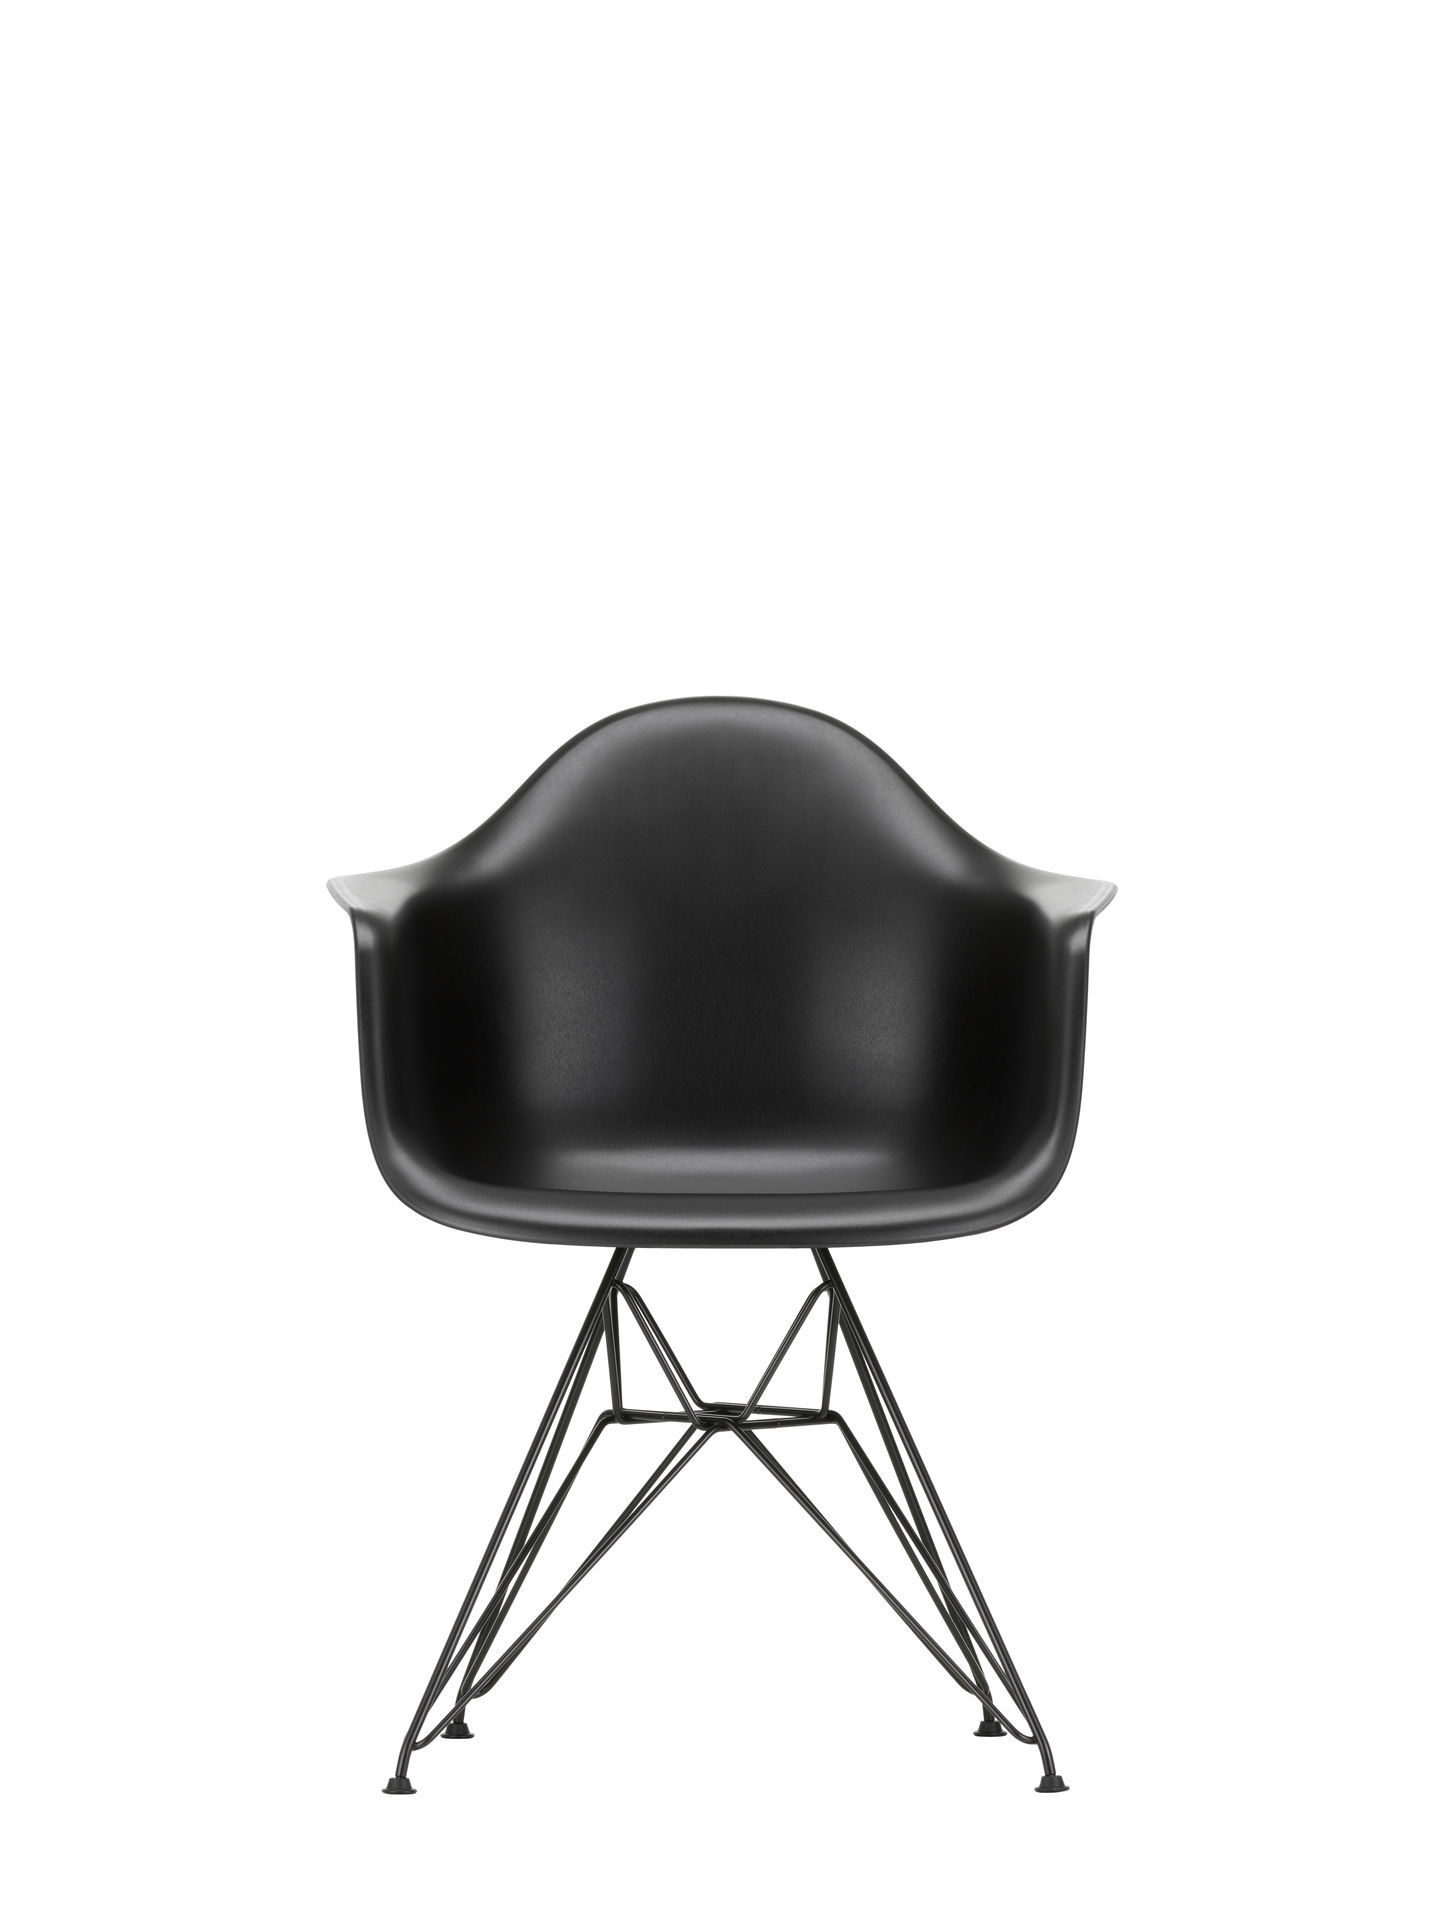 Eames Plastic Arm Chair DAR Chair Vitra